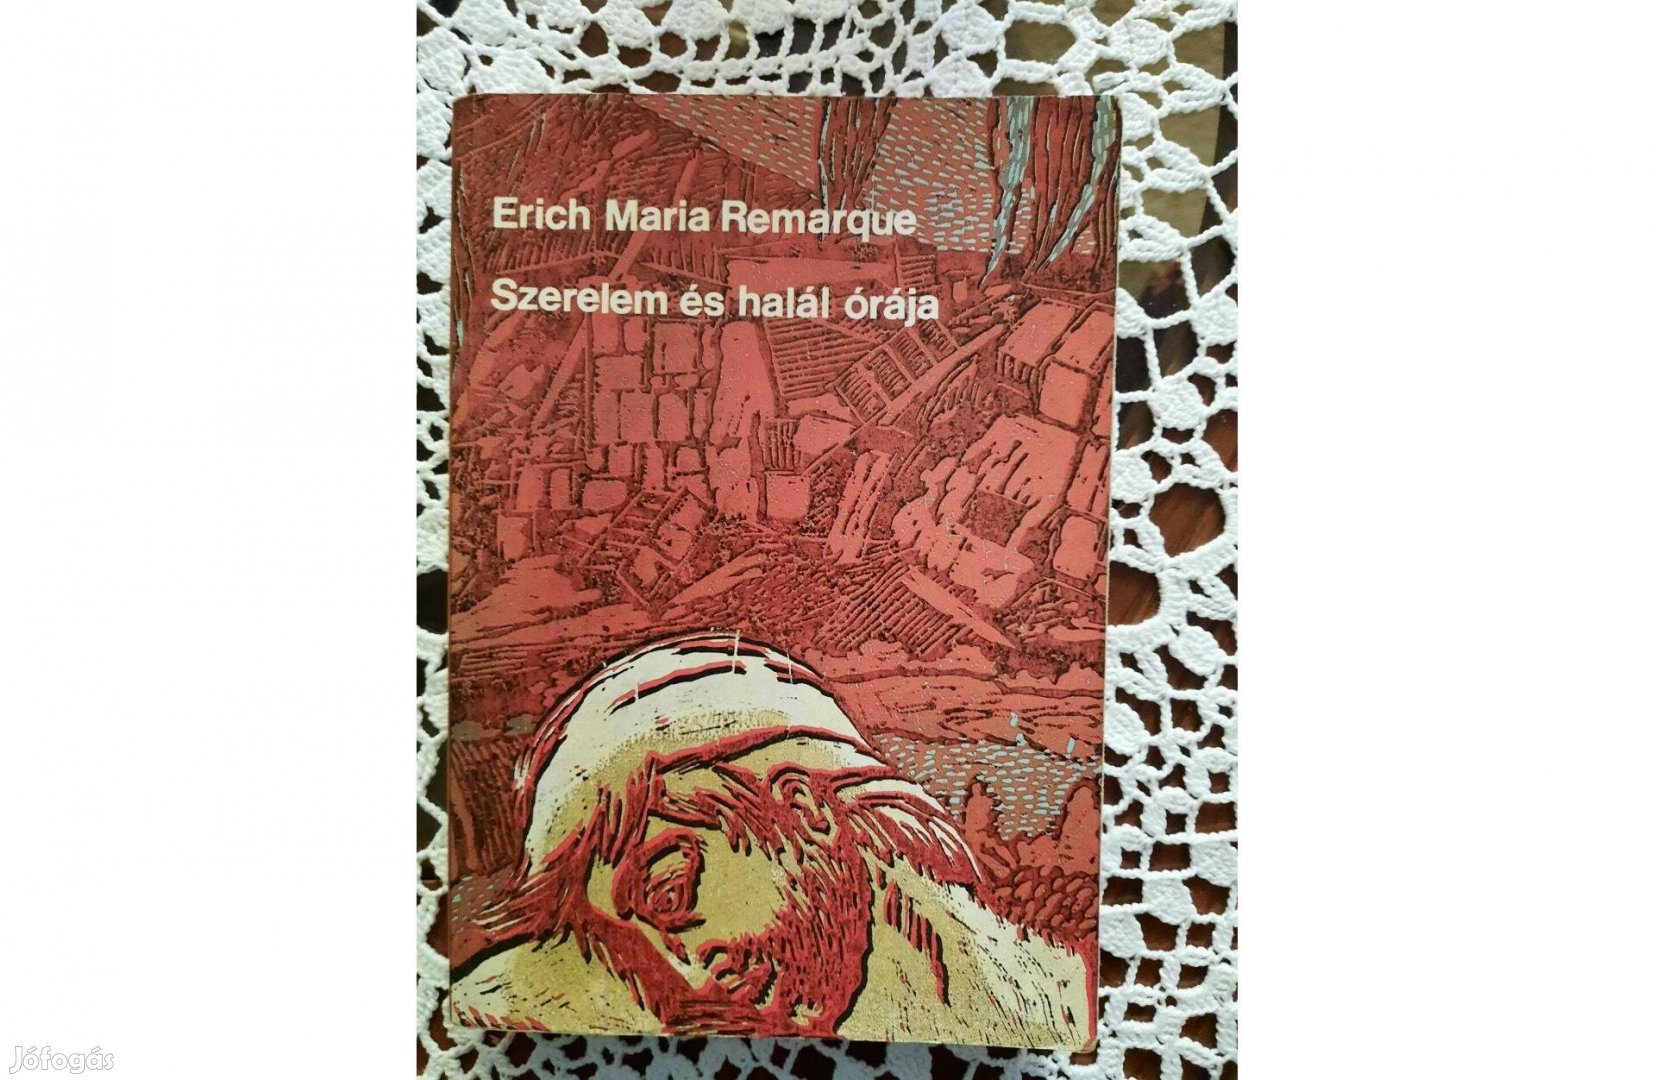 Erich Maria Remarque Szerelem és halál órája c. könyv eladó